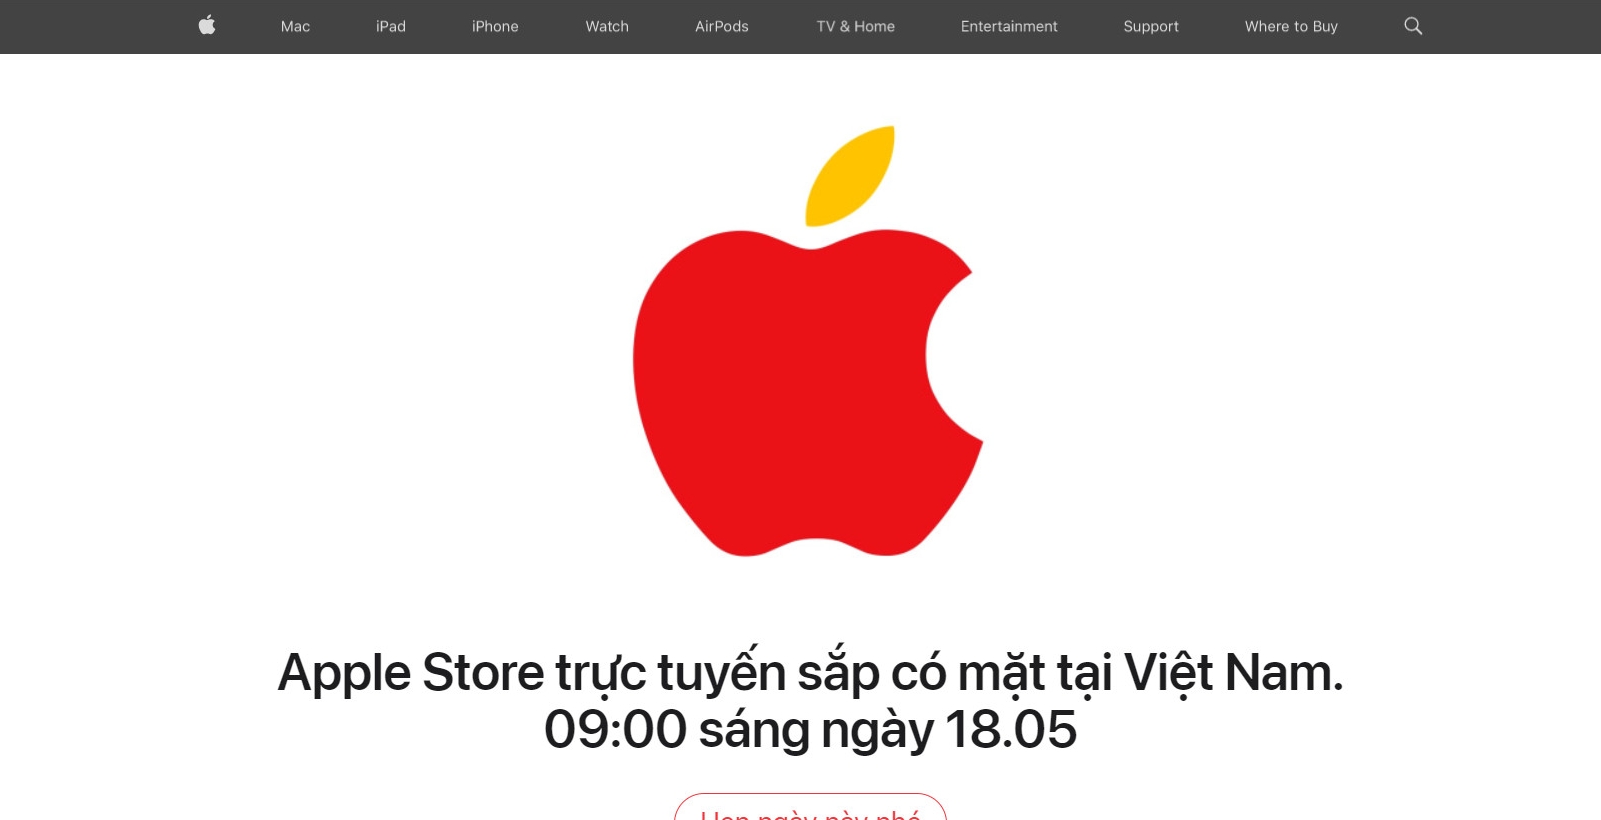 Lượng iPhone nhập về Việt Nam khan hiếm, có hay không chuyện Apple ...